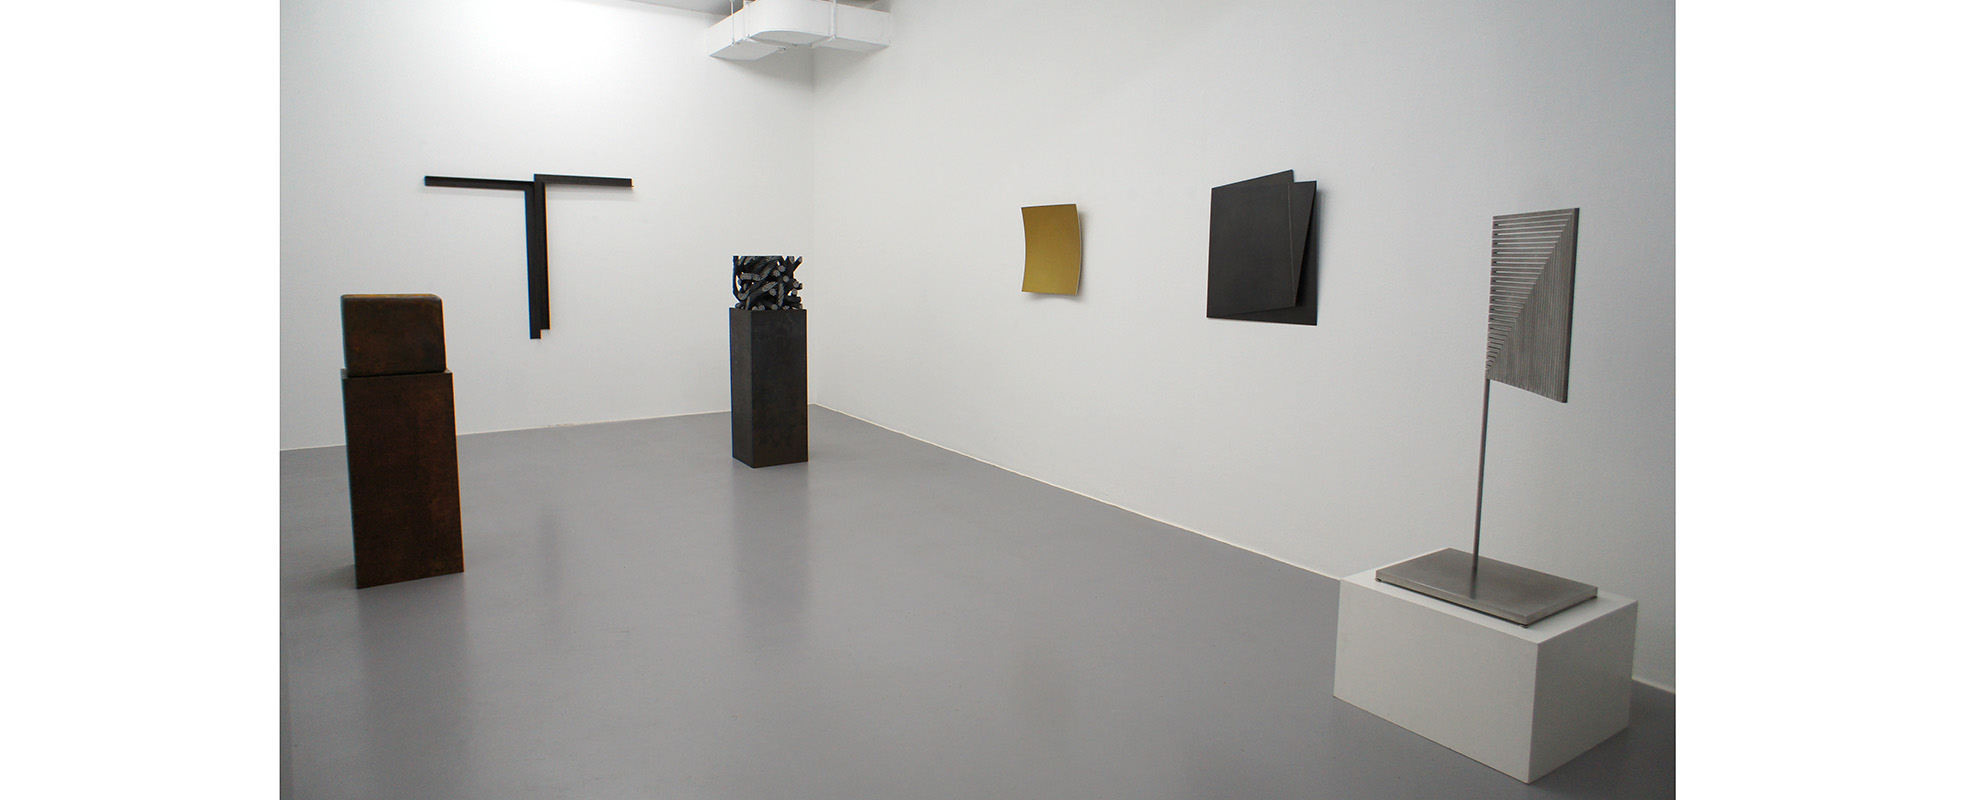 Ausstellungsansicht "Heavy Metal?", Galerie Renate Bender 2014